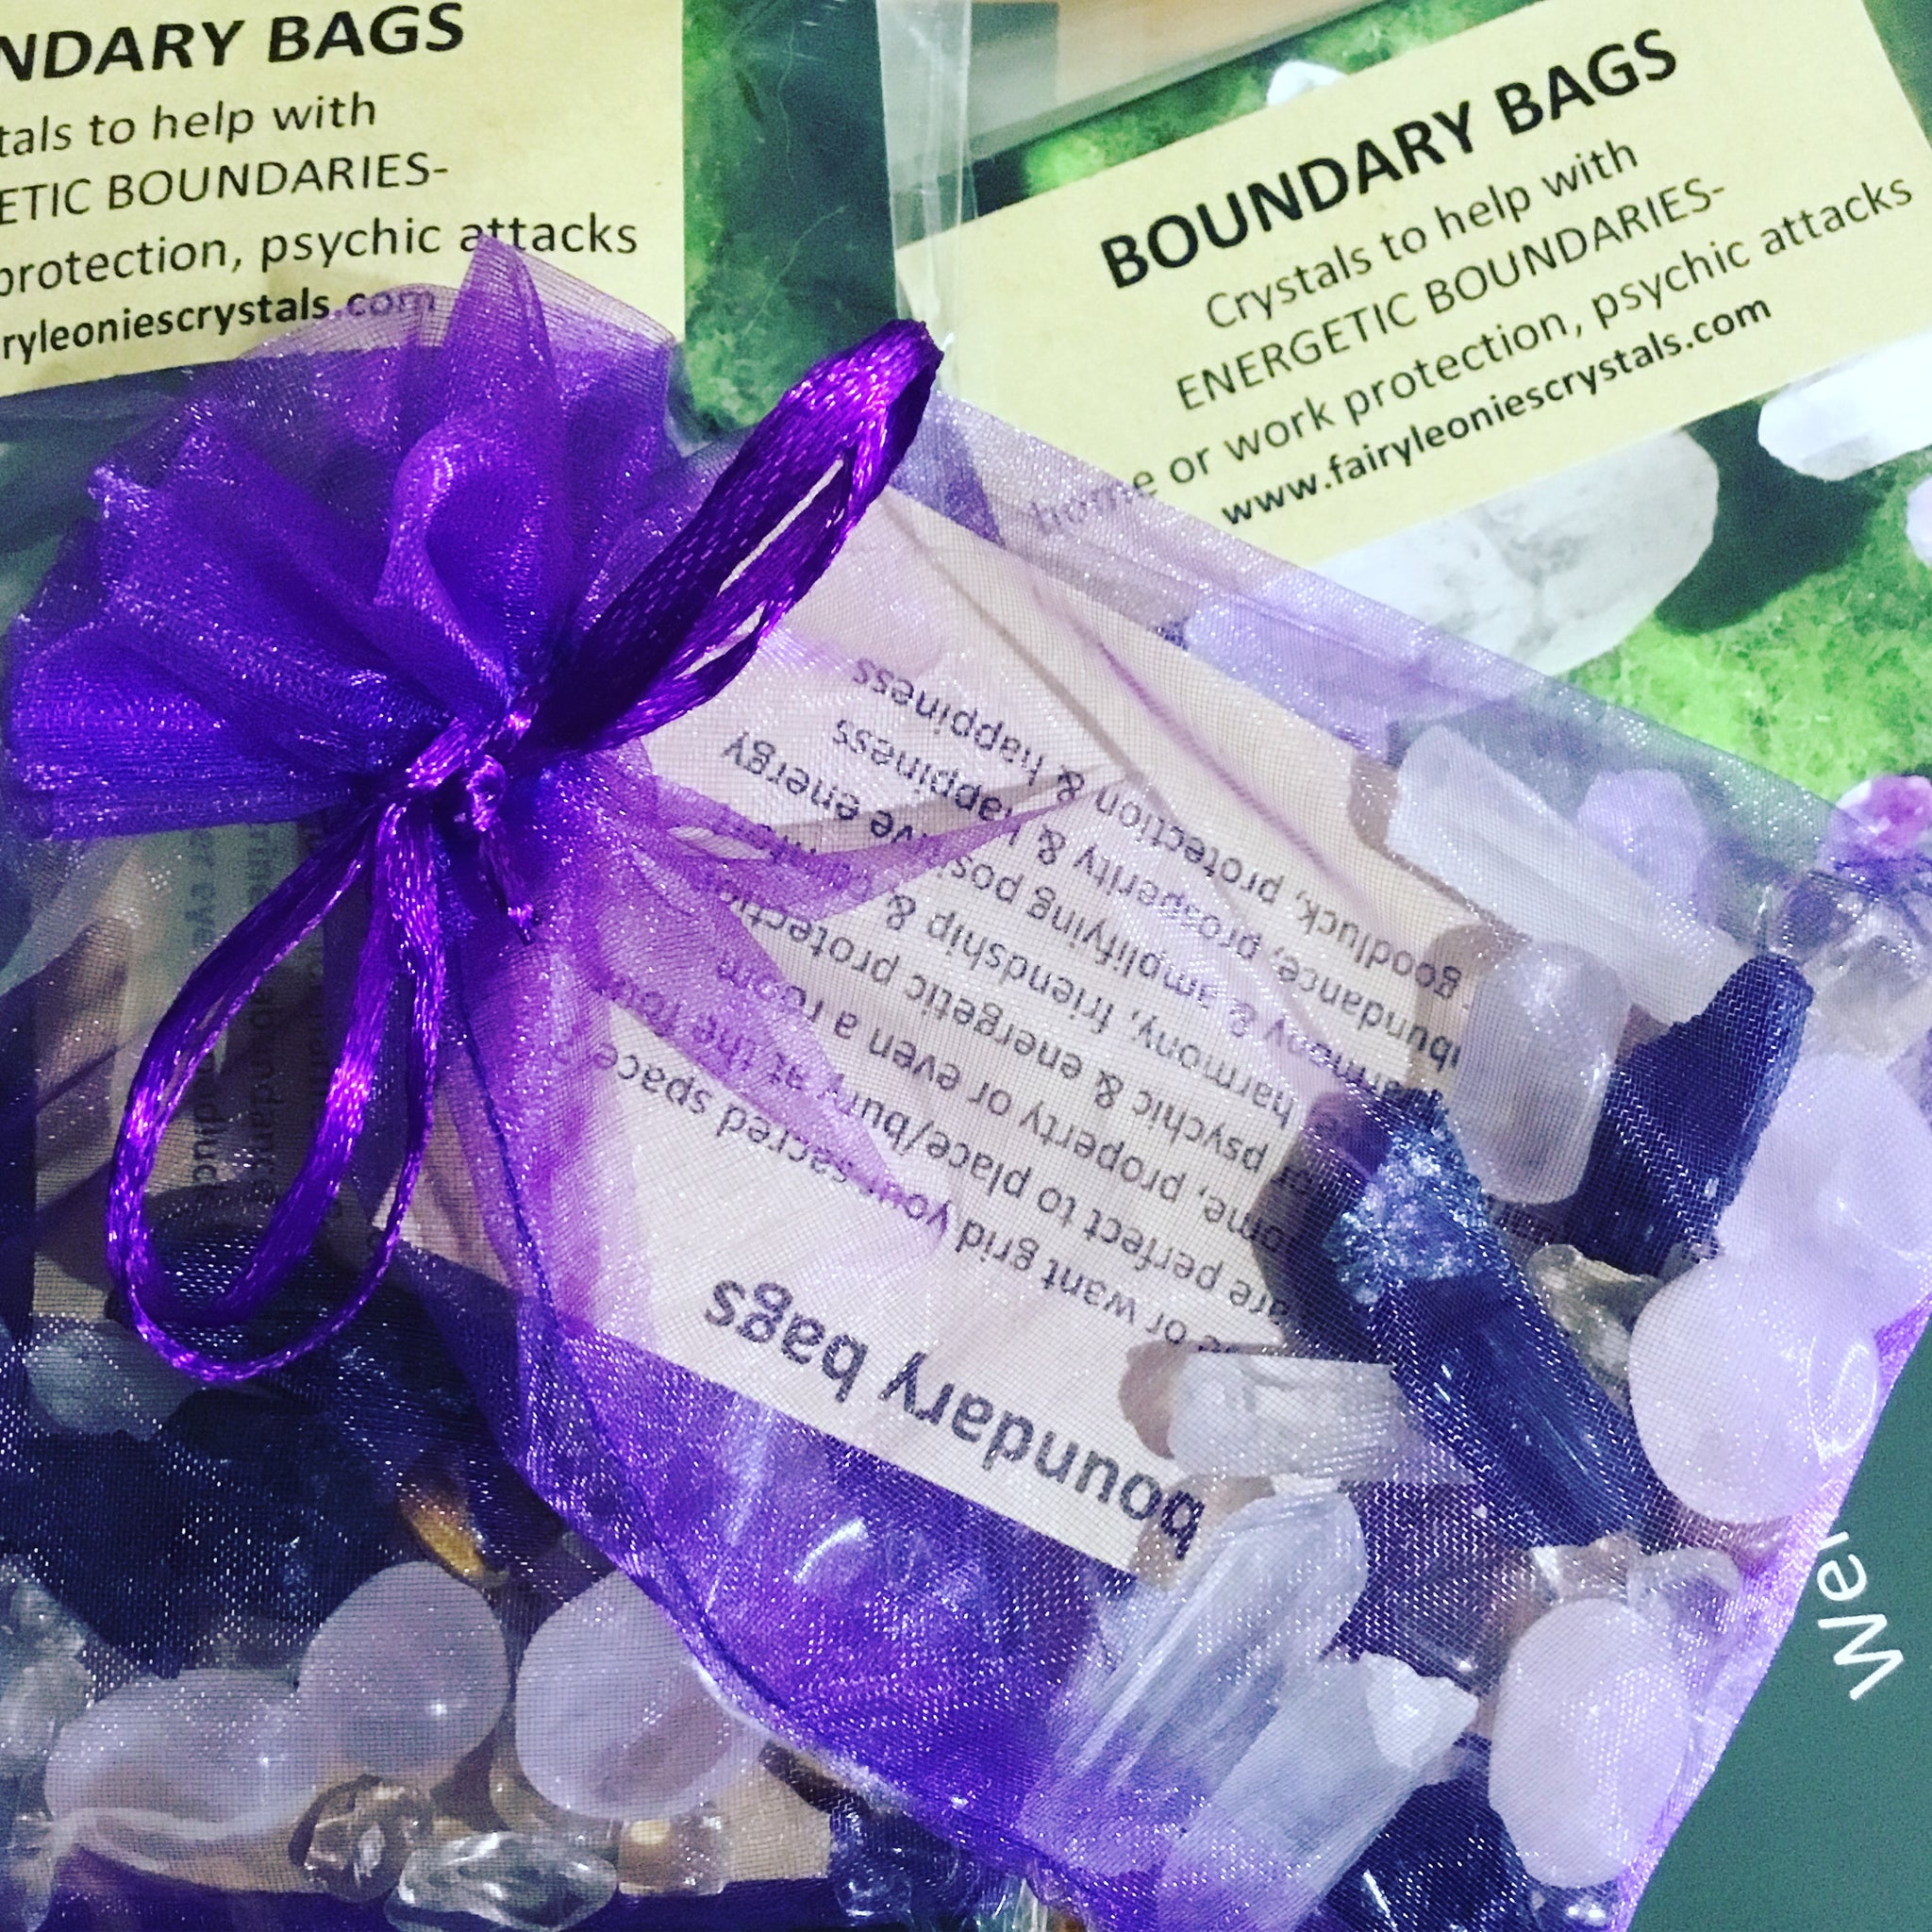 Mini crystal “boundary bags”